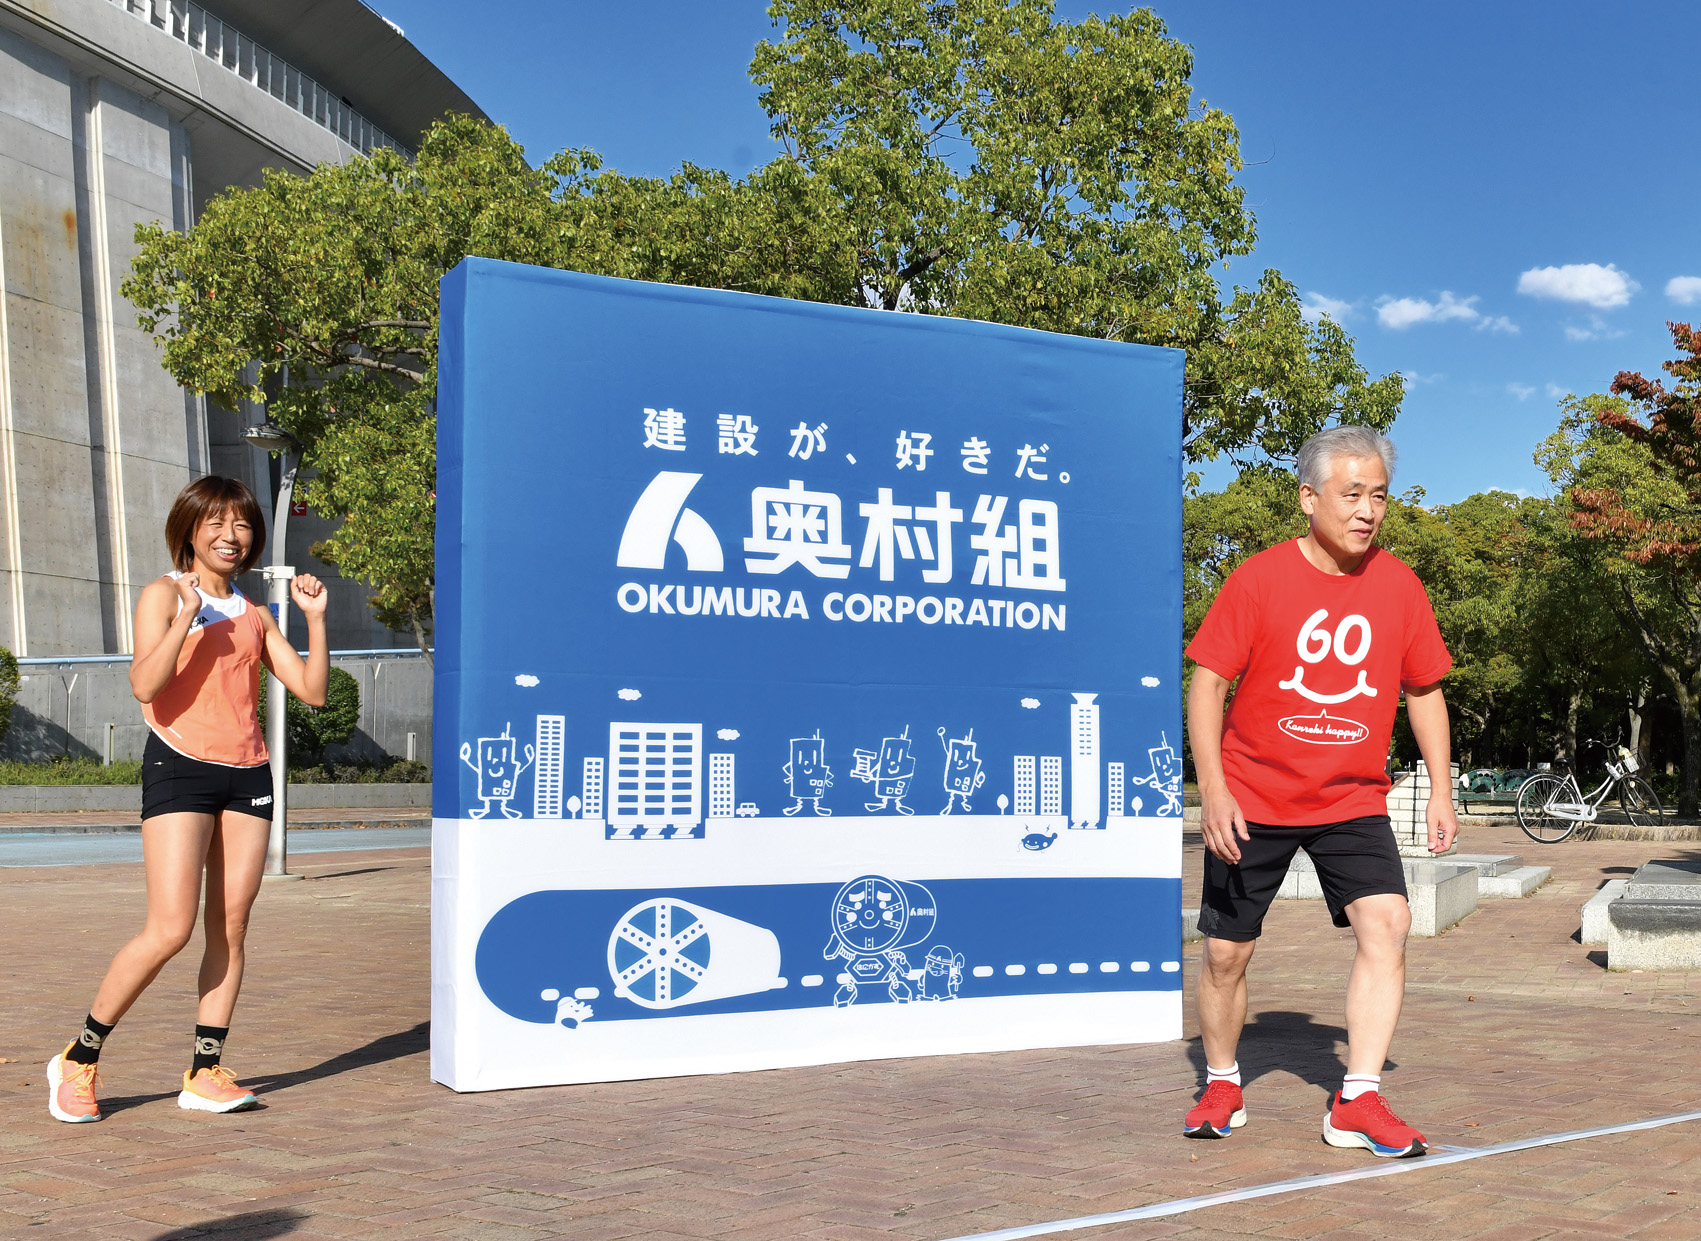 フルマラソンを走った経験もある奥村社長が、福士さんを相手に1キロ走対決に挑戦